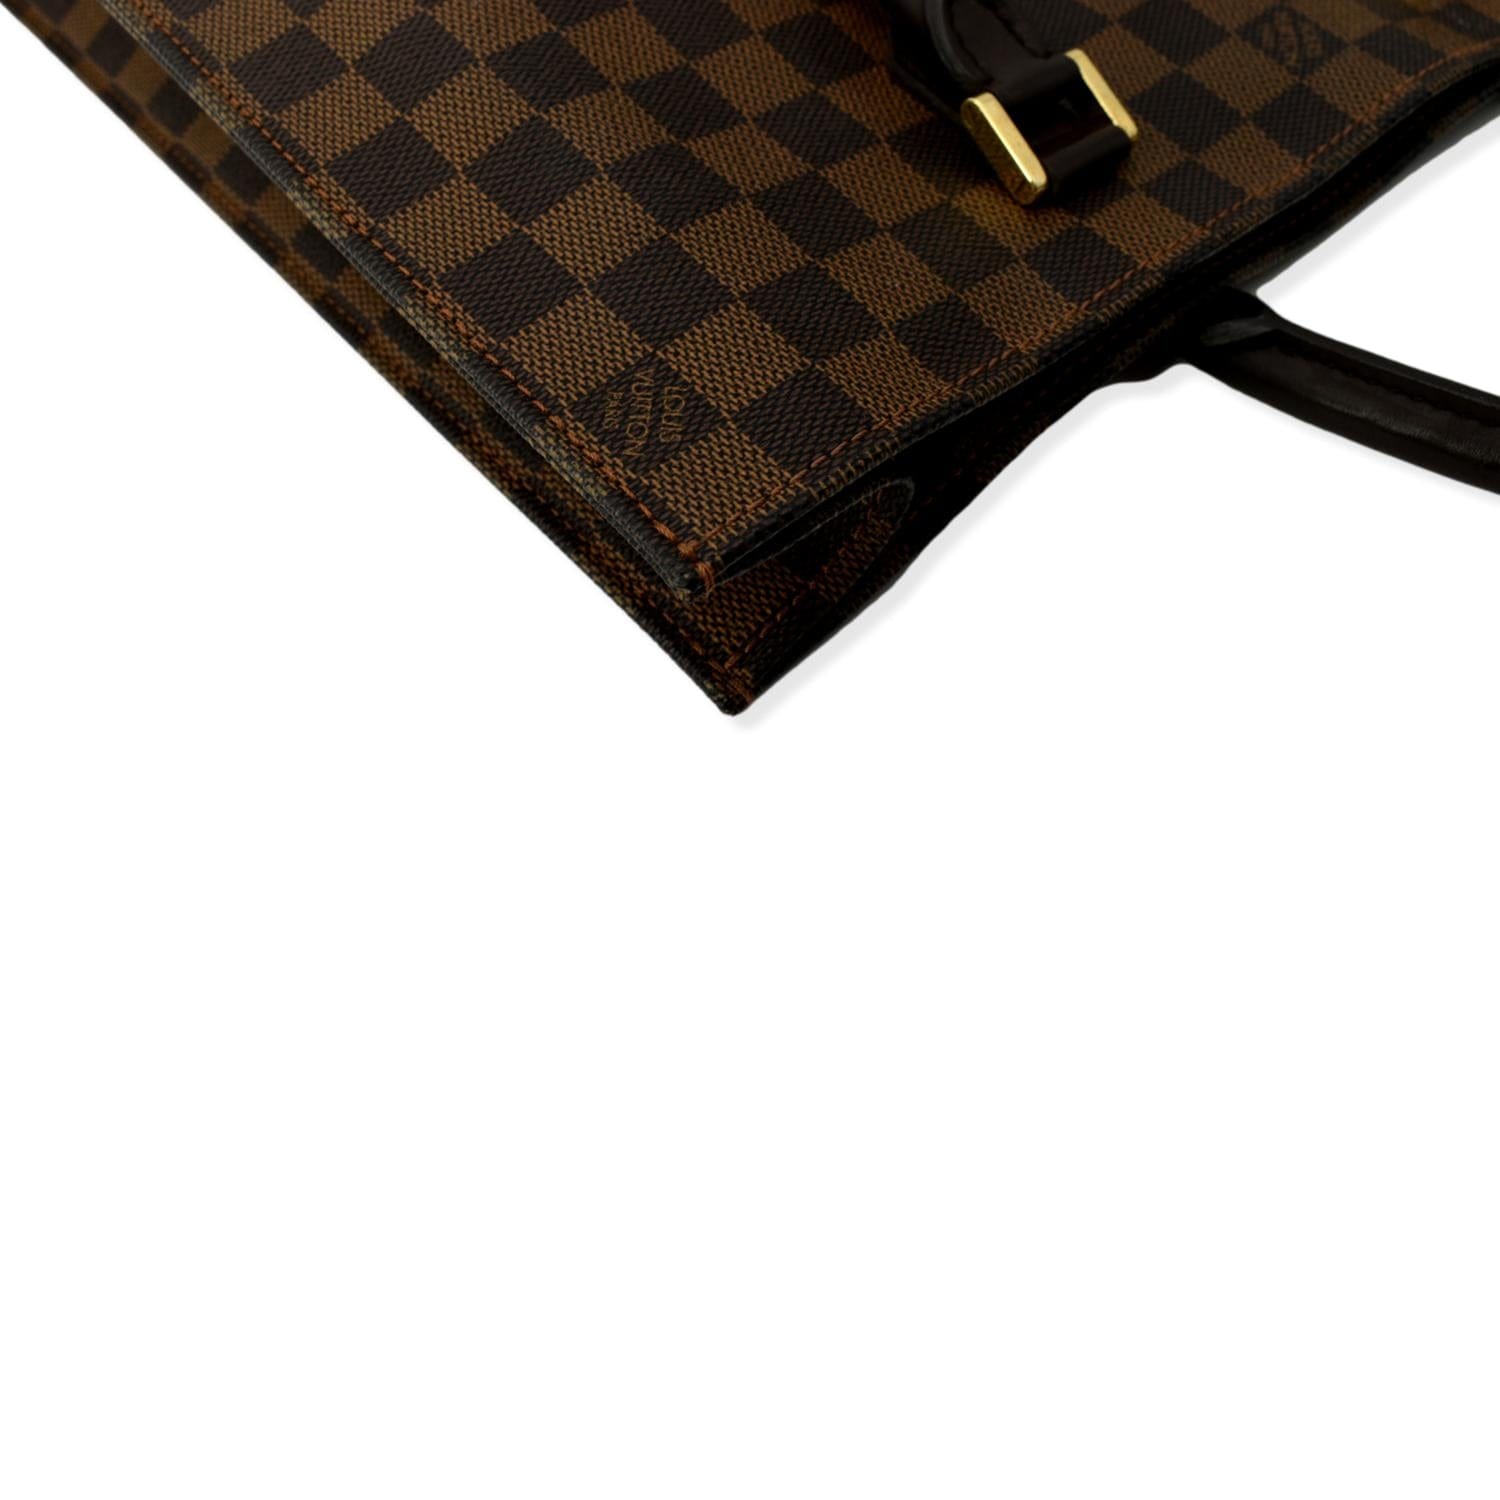 Brown Louis Vuitton Monogram Sac Plat Tote Bag – Designer Revival